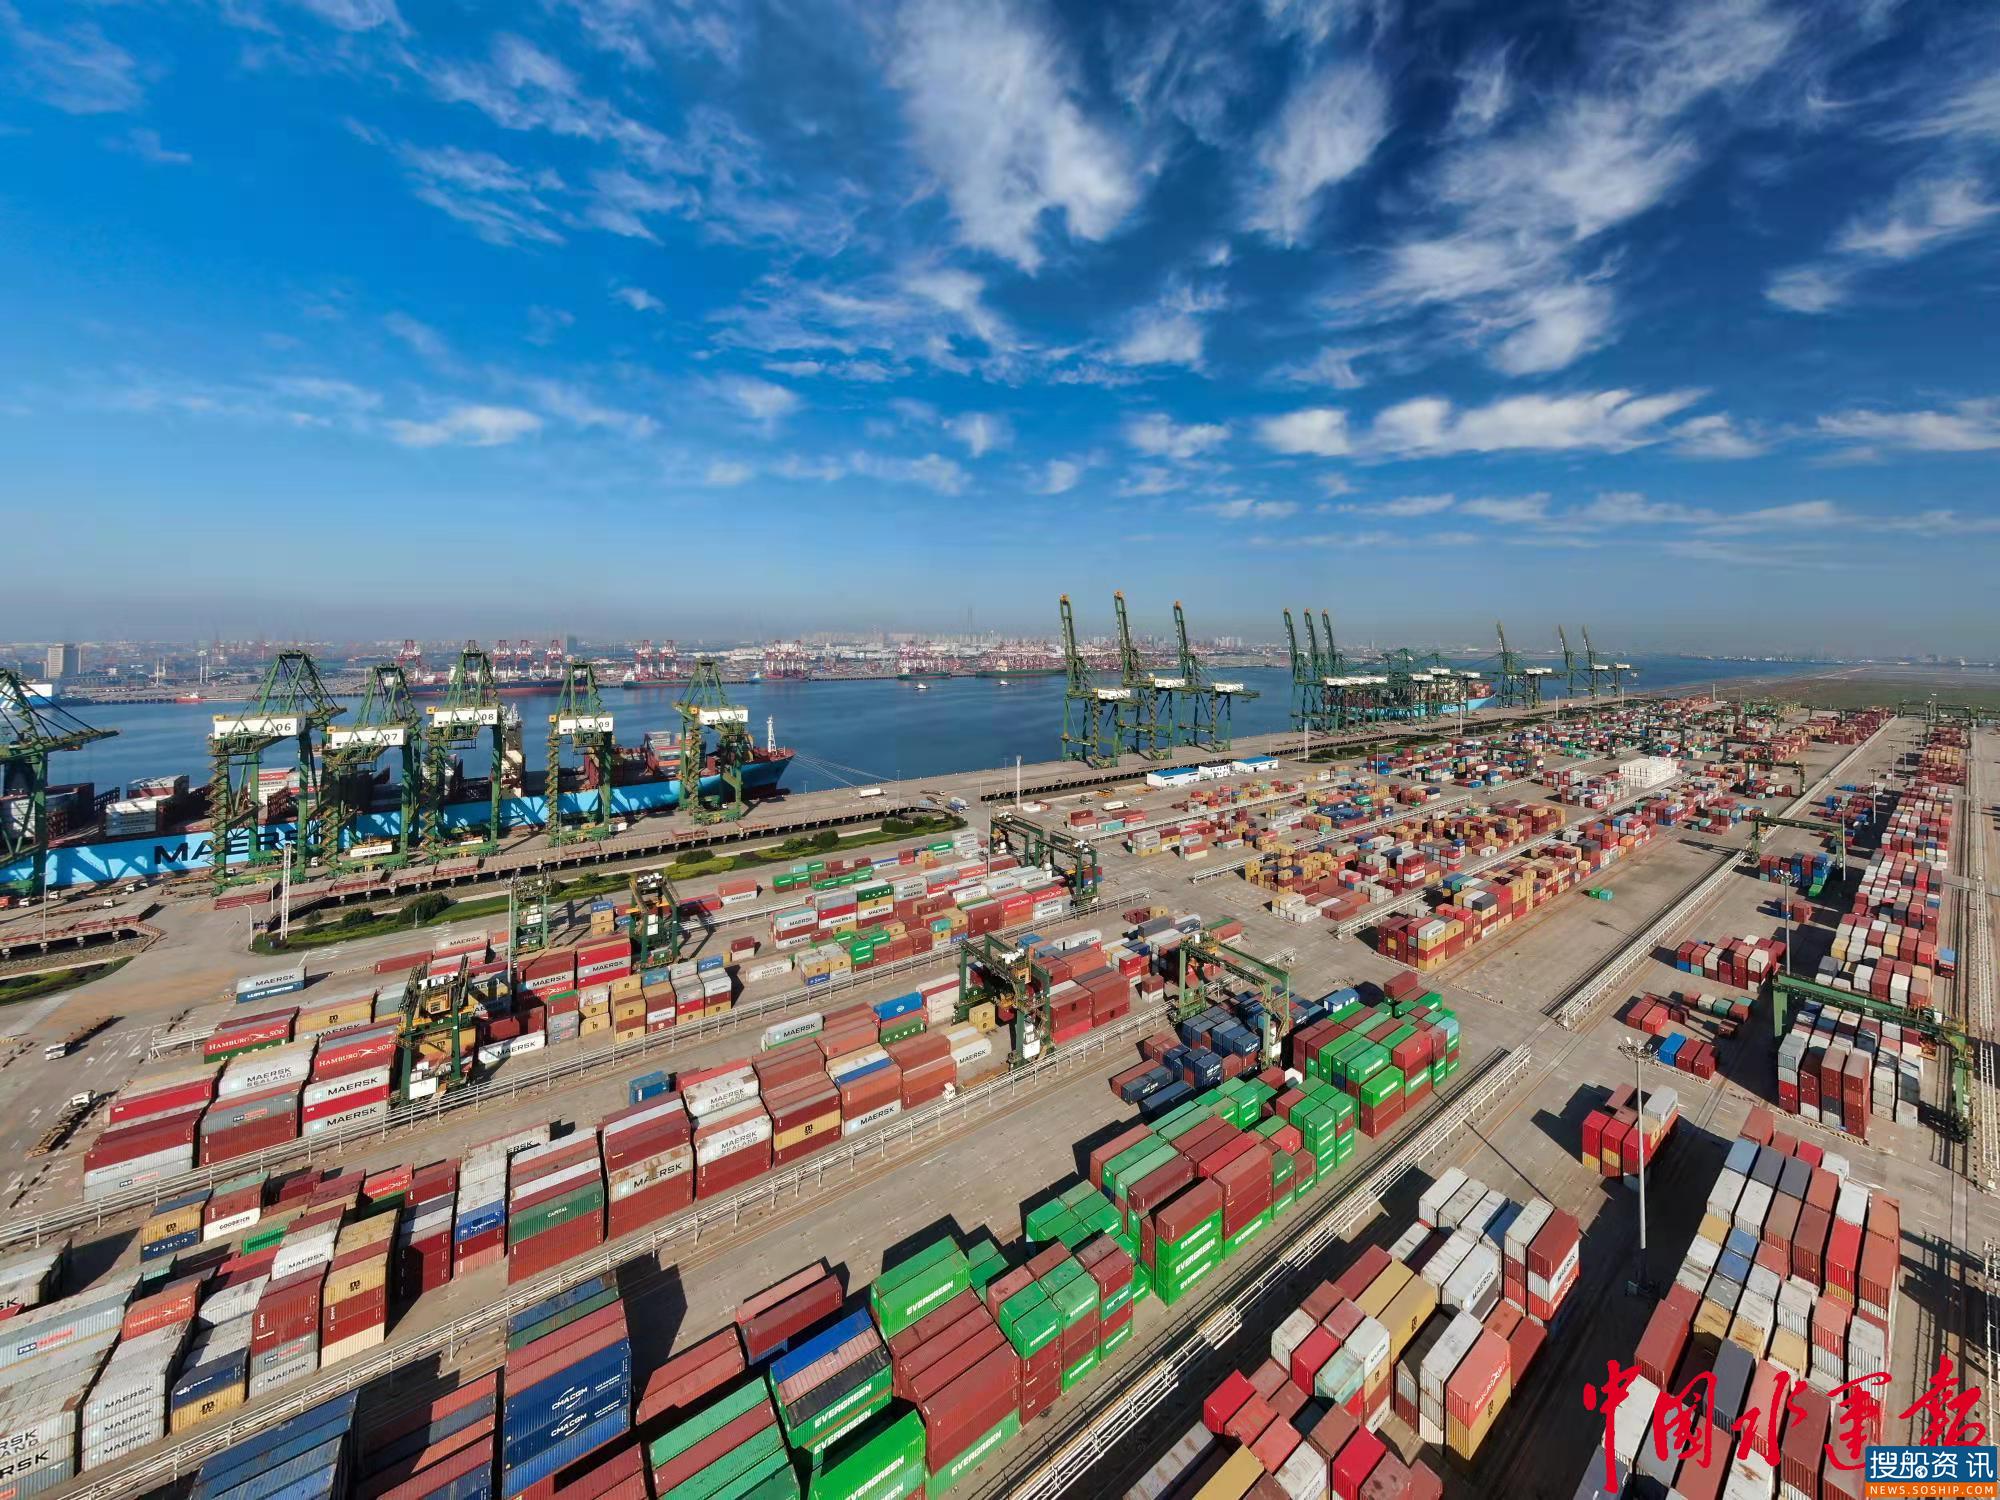 中远海运港口收购天津港集装箱码头有限公司34.99%股权